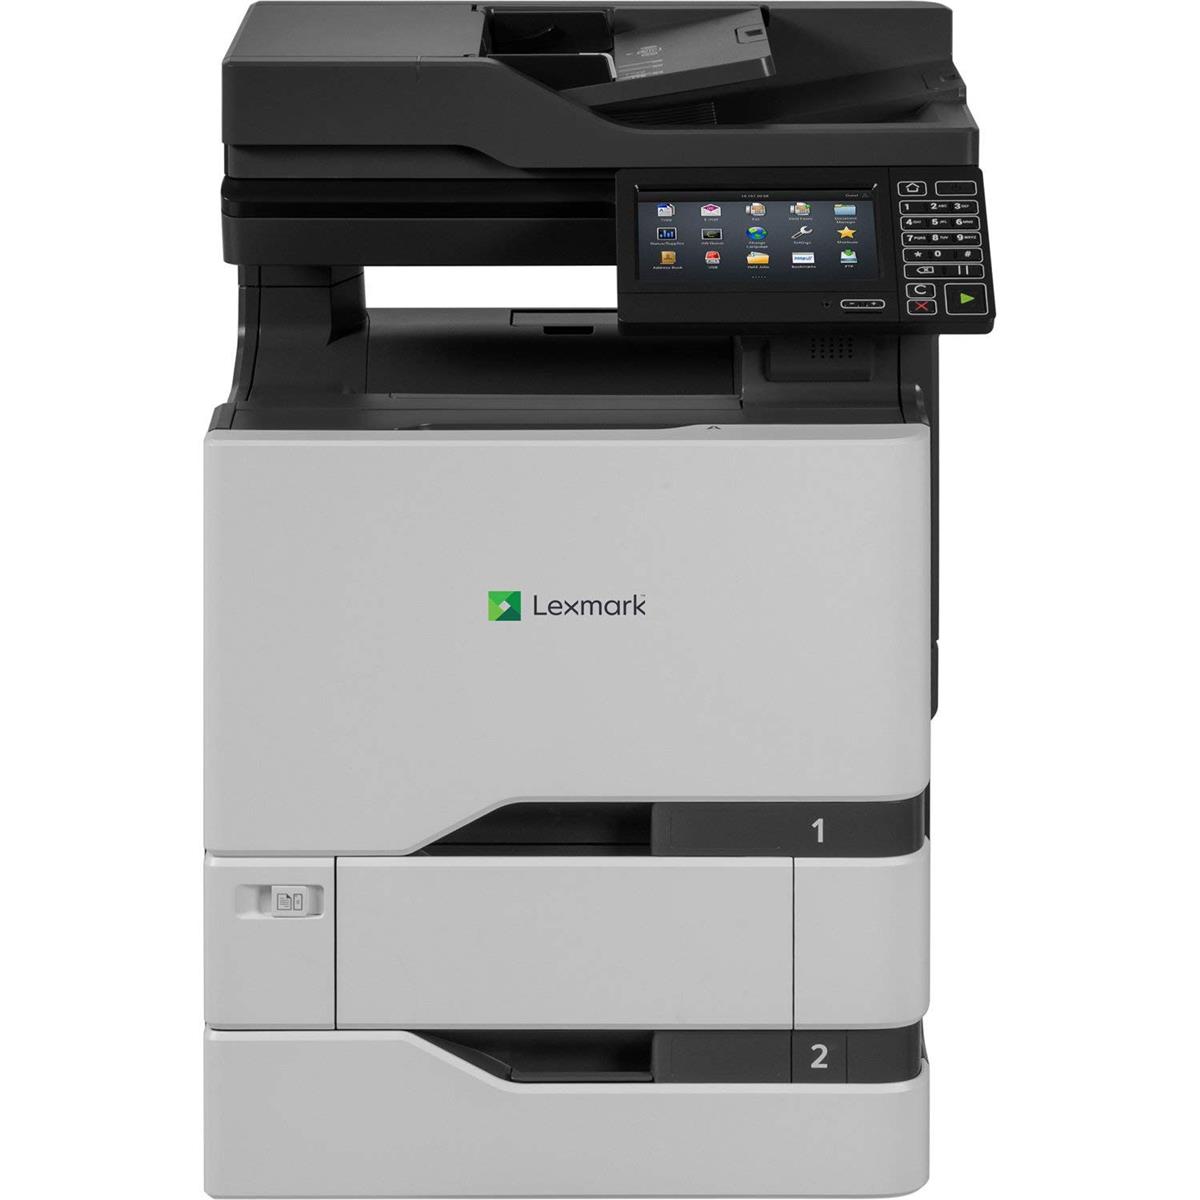 Image of Lexmark CX725dthe Color Laser Multifunction Printer